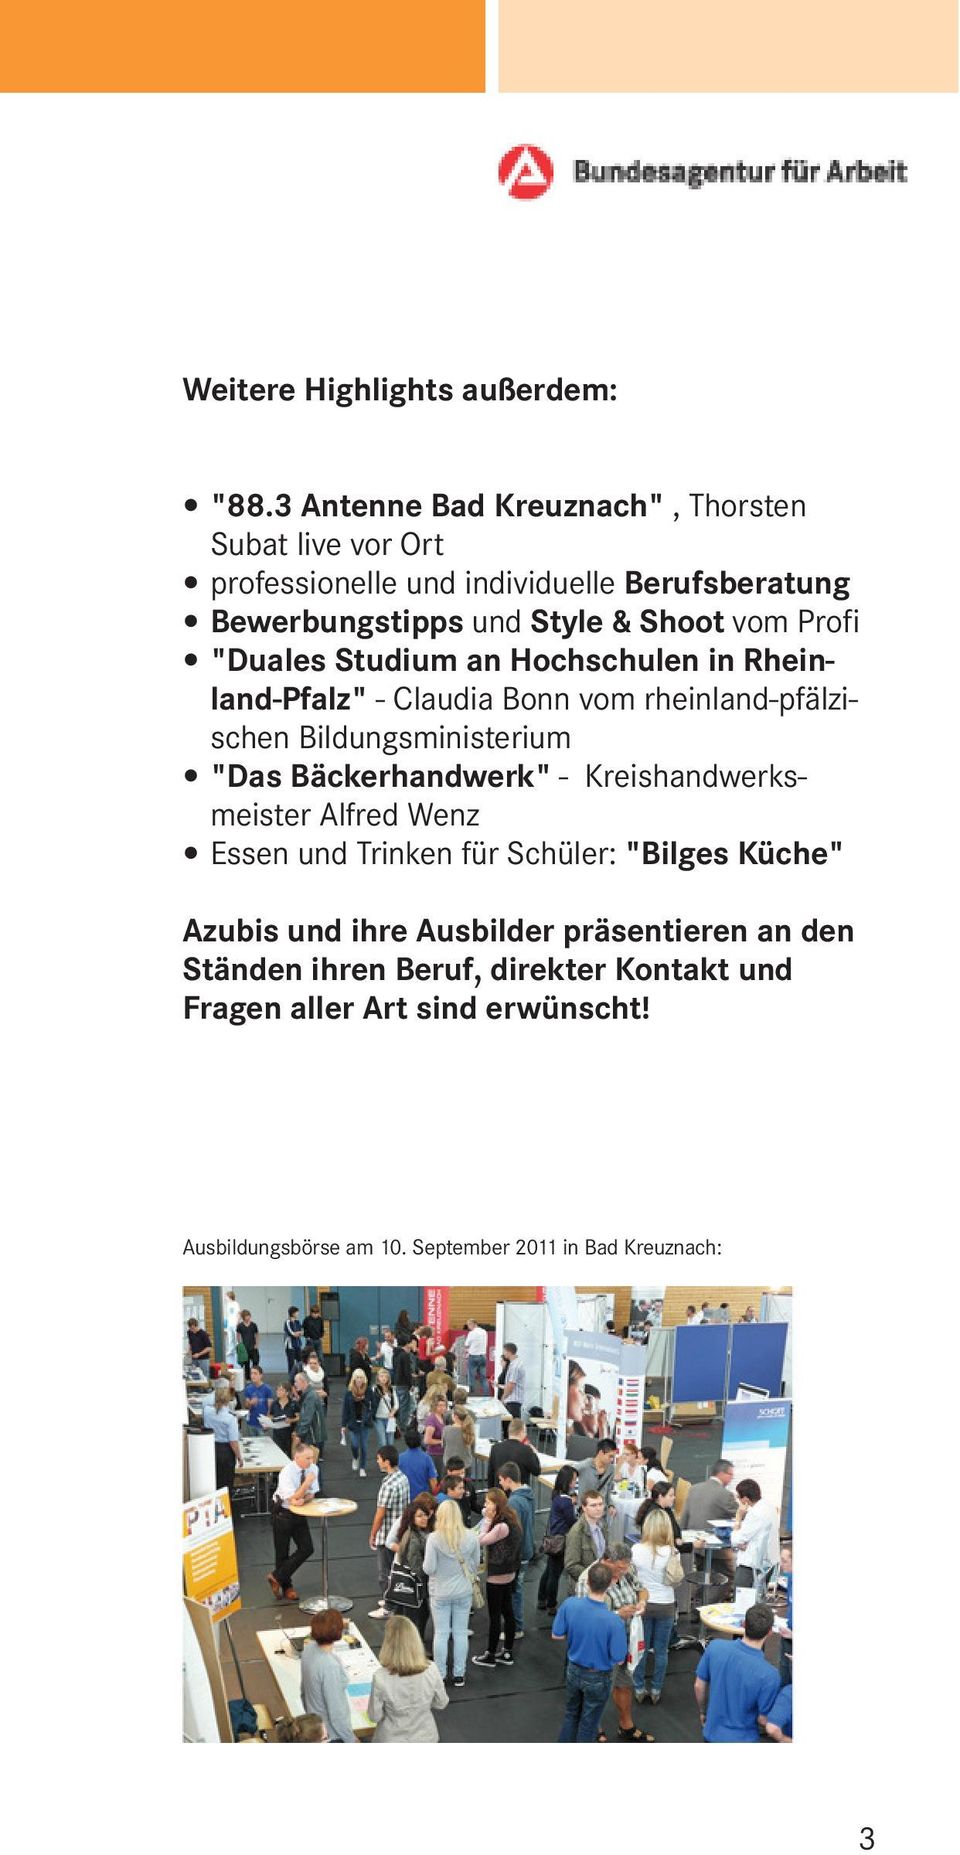 Profi "Duales Studium an Hochschulen in Rheinland-Pfalz" - Claudia Bonn vom rheinland-pfälzischen Bildungsministerium "Das Bäckerhandwerk" -